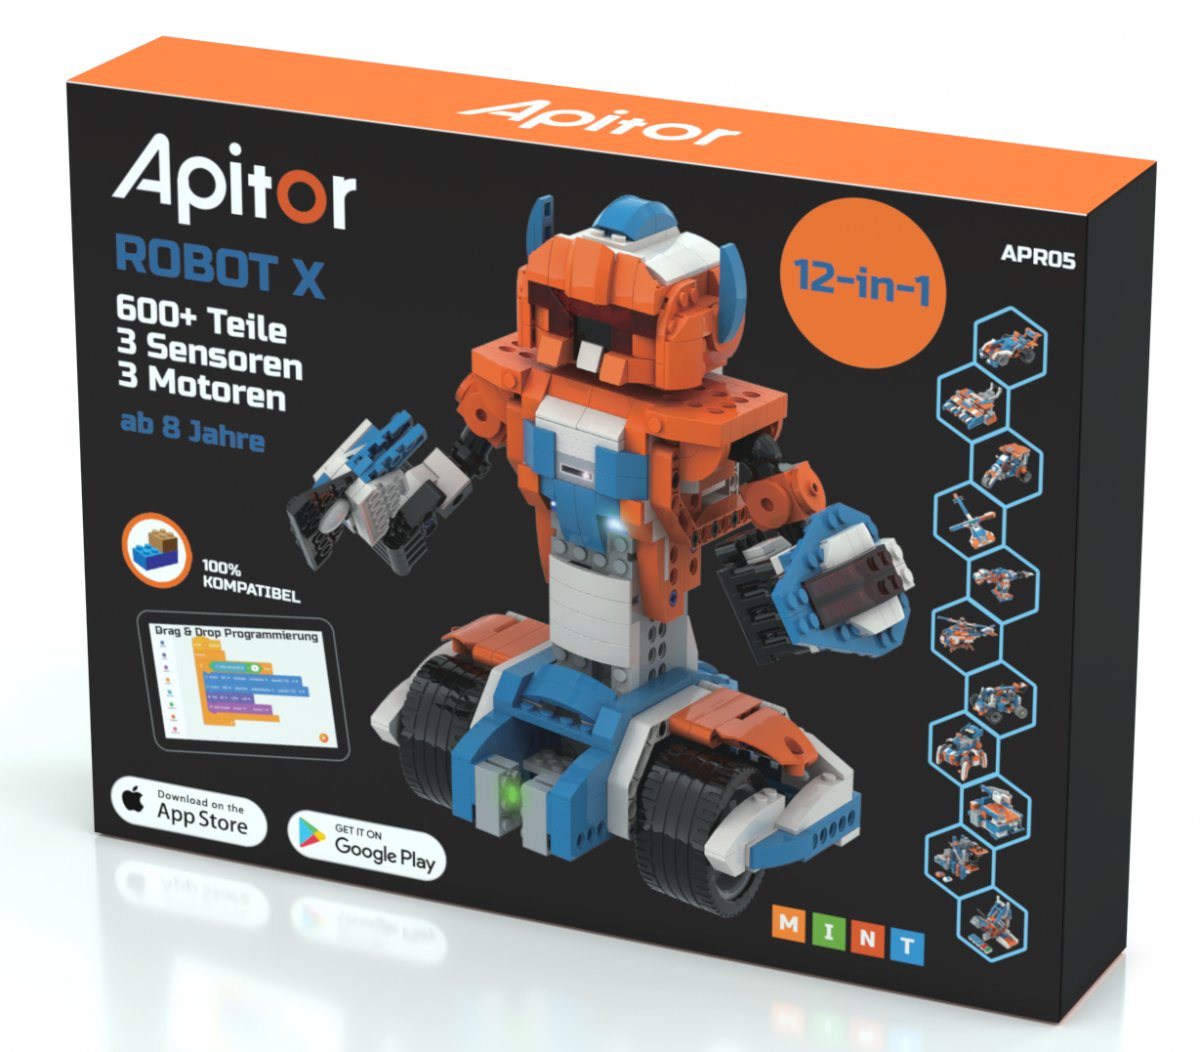 Apitor Robot X heißt das programmierbare Baustein-Set mit vielen Spiel- und Programmiermöglichkeiten. von Open Brick Source